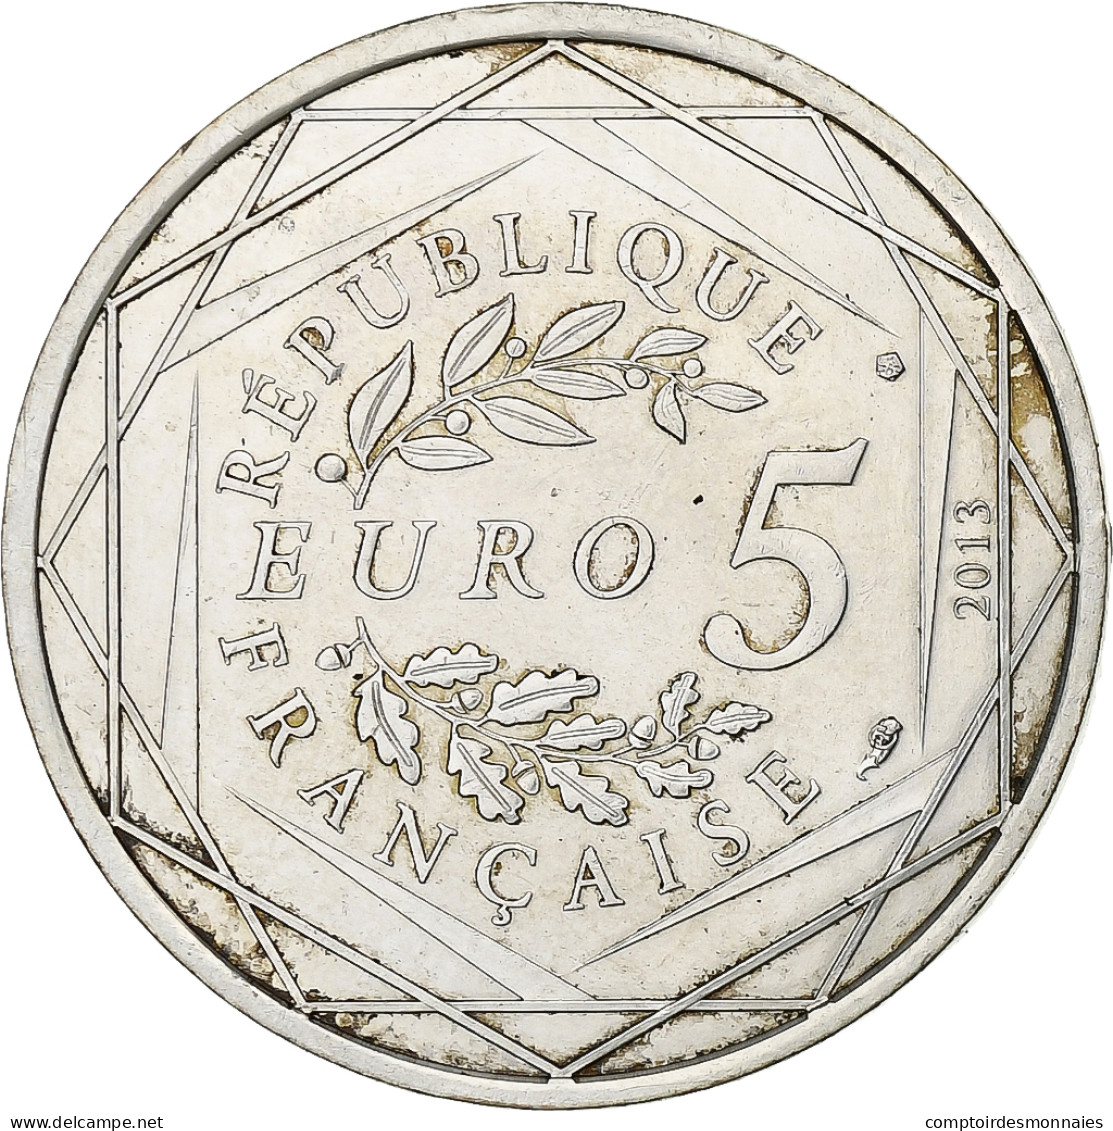 France, 5 Euros, Fraternité, 2013, Argent, SUP+, Gadoury:EU647 - France